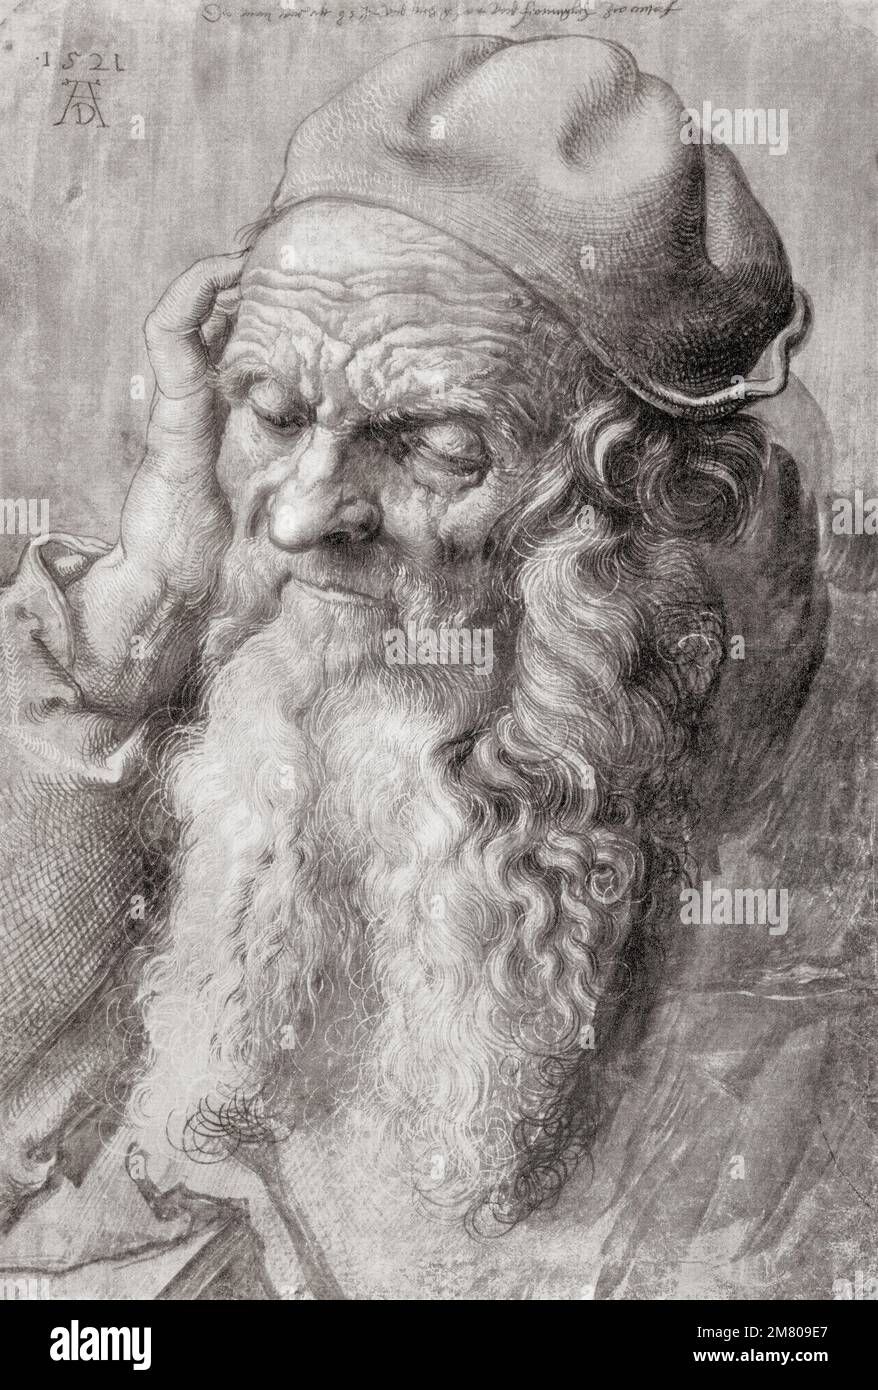 Porträt eines älteren Mannes von 93 Jahren, 1521, nach einem Werk von Albrecht Dürer, 1471-1528, manchmal in Englisch als Dürer geschrieben. Deutscher Maler, Druckmacher und Theoretiker der deutschen Renaissance. Aus Albrecht Dürer, sein Leben und eine Auswahl seiner Werke, veröffentlicht 1928. Stockfoto